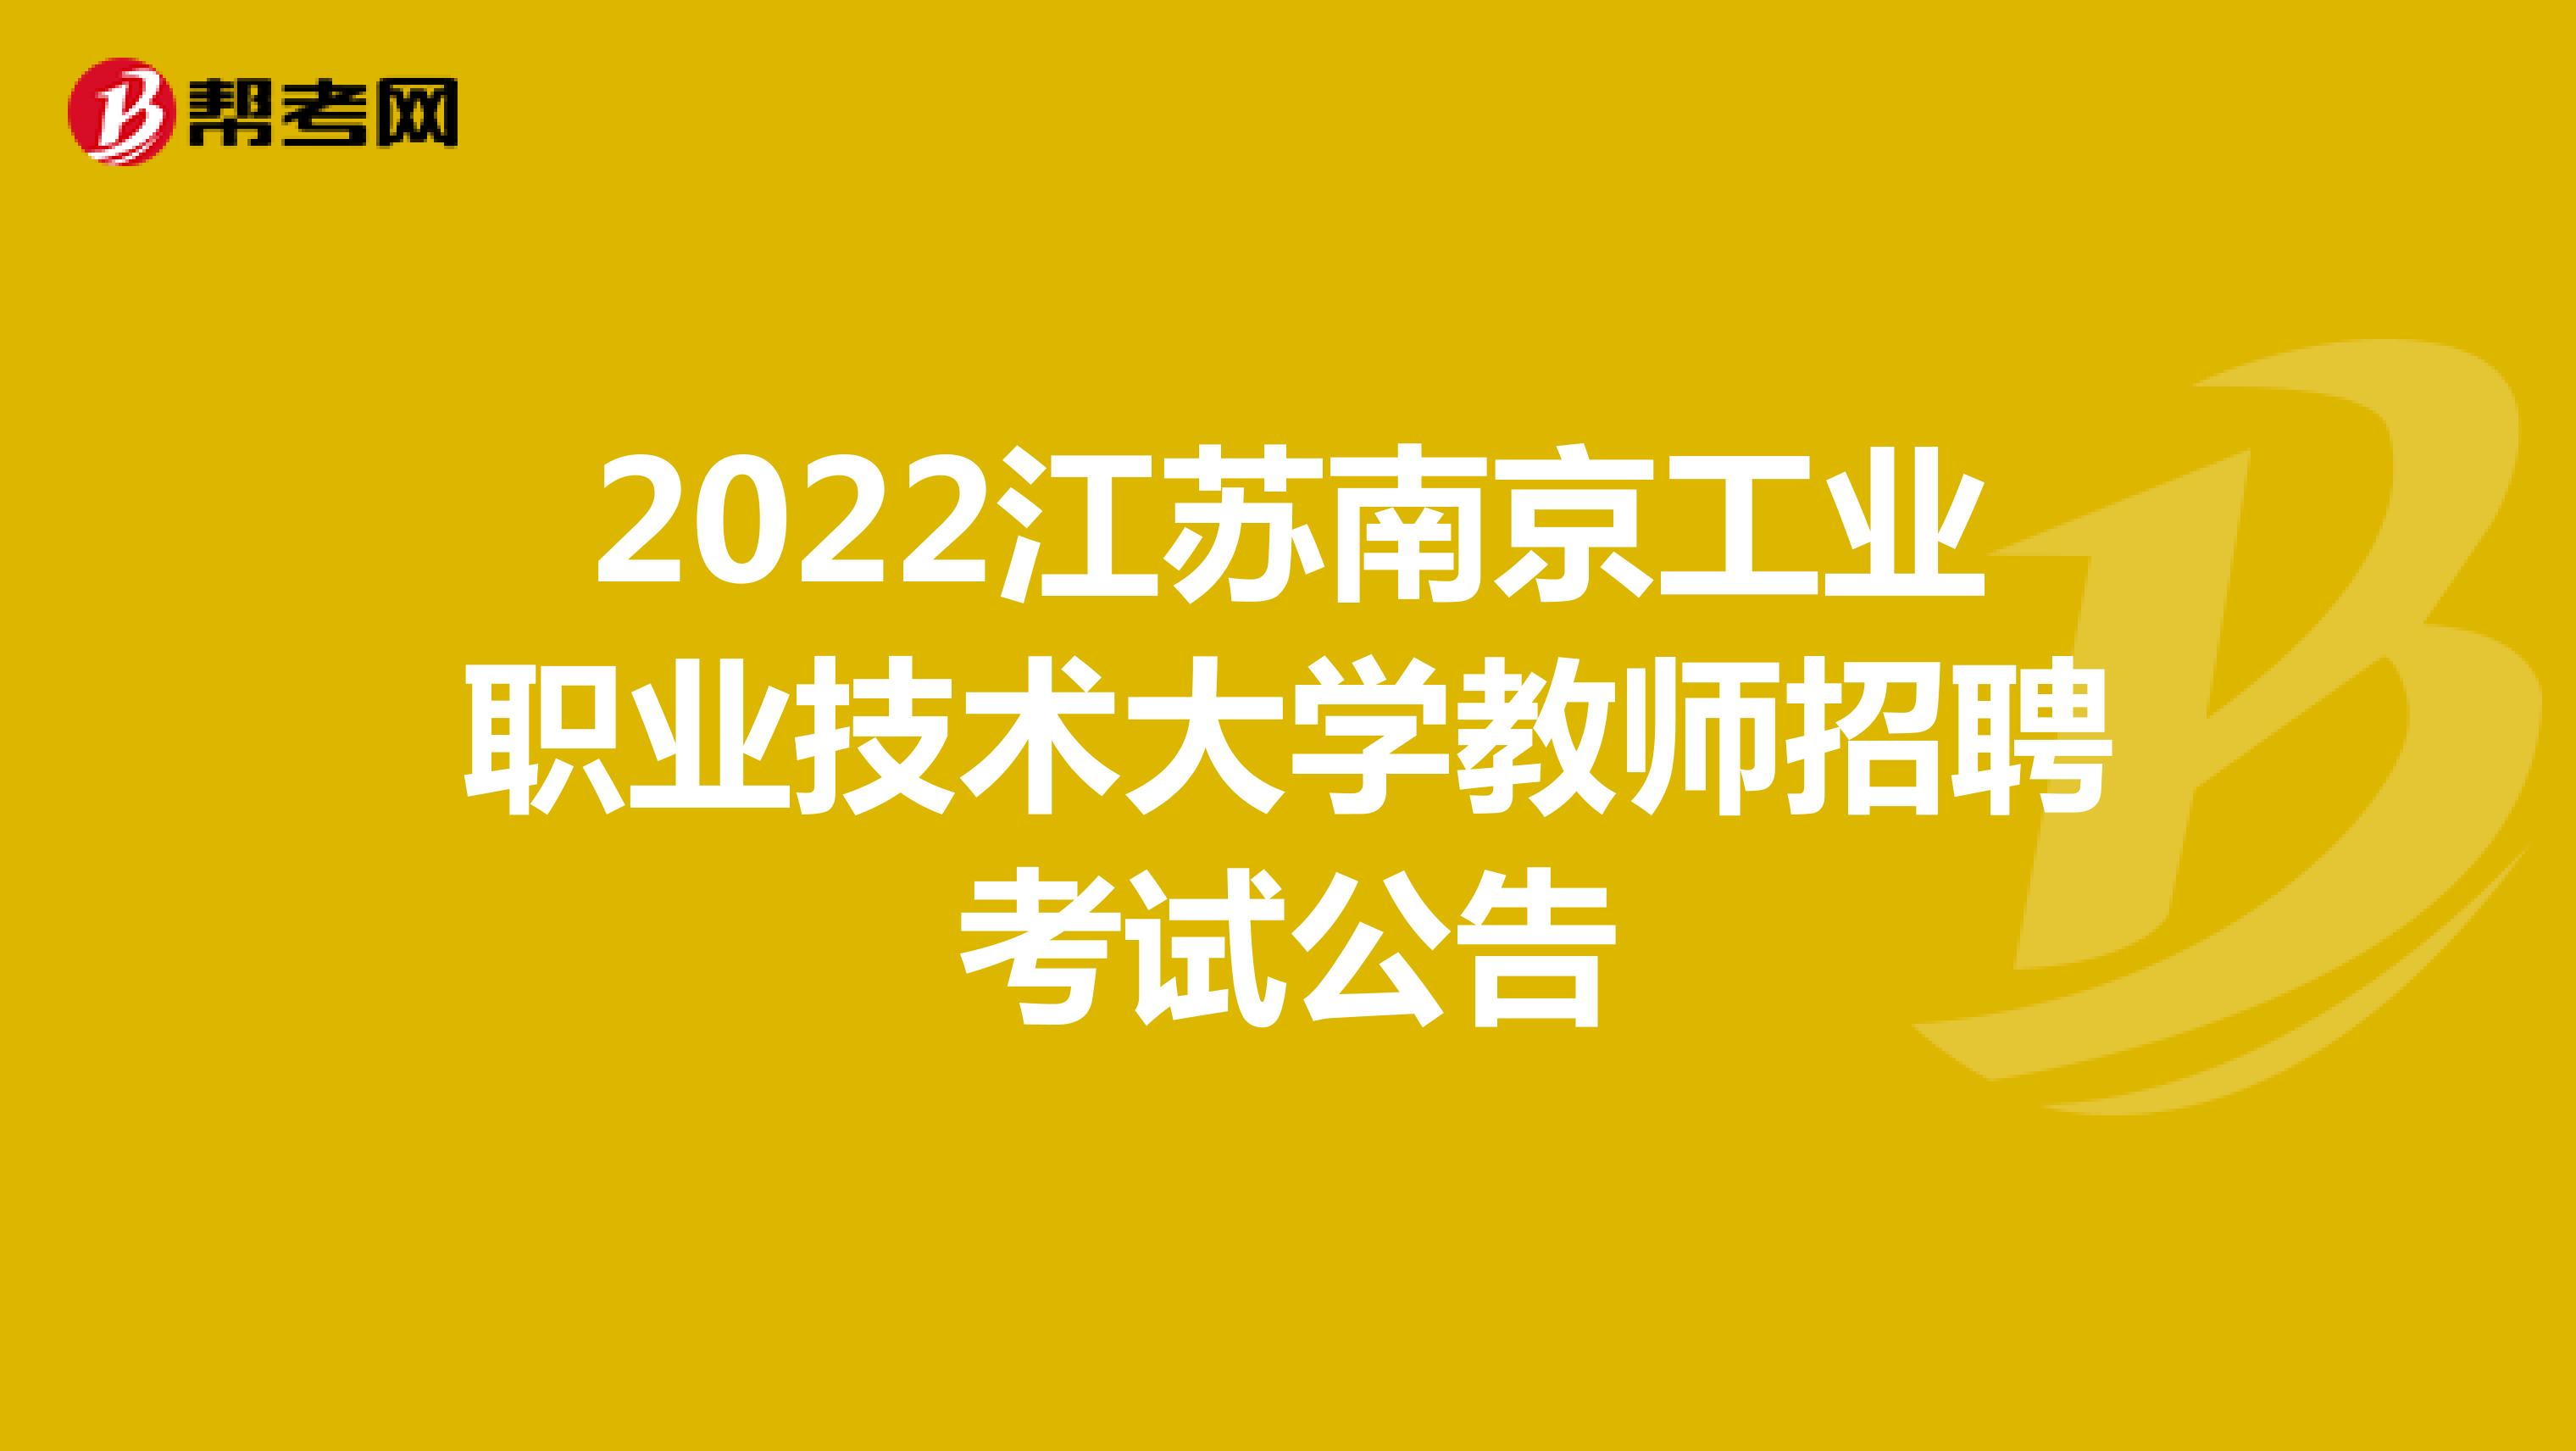 2022江苏南京工业职业技术大学教师招聘考试公告